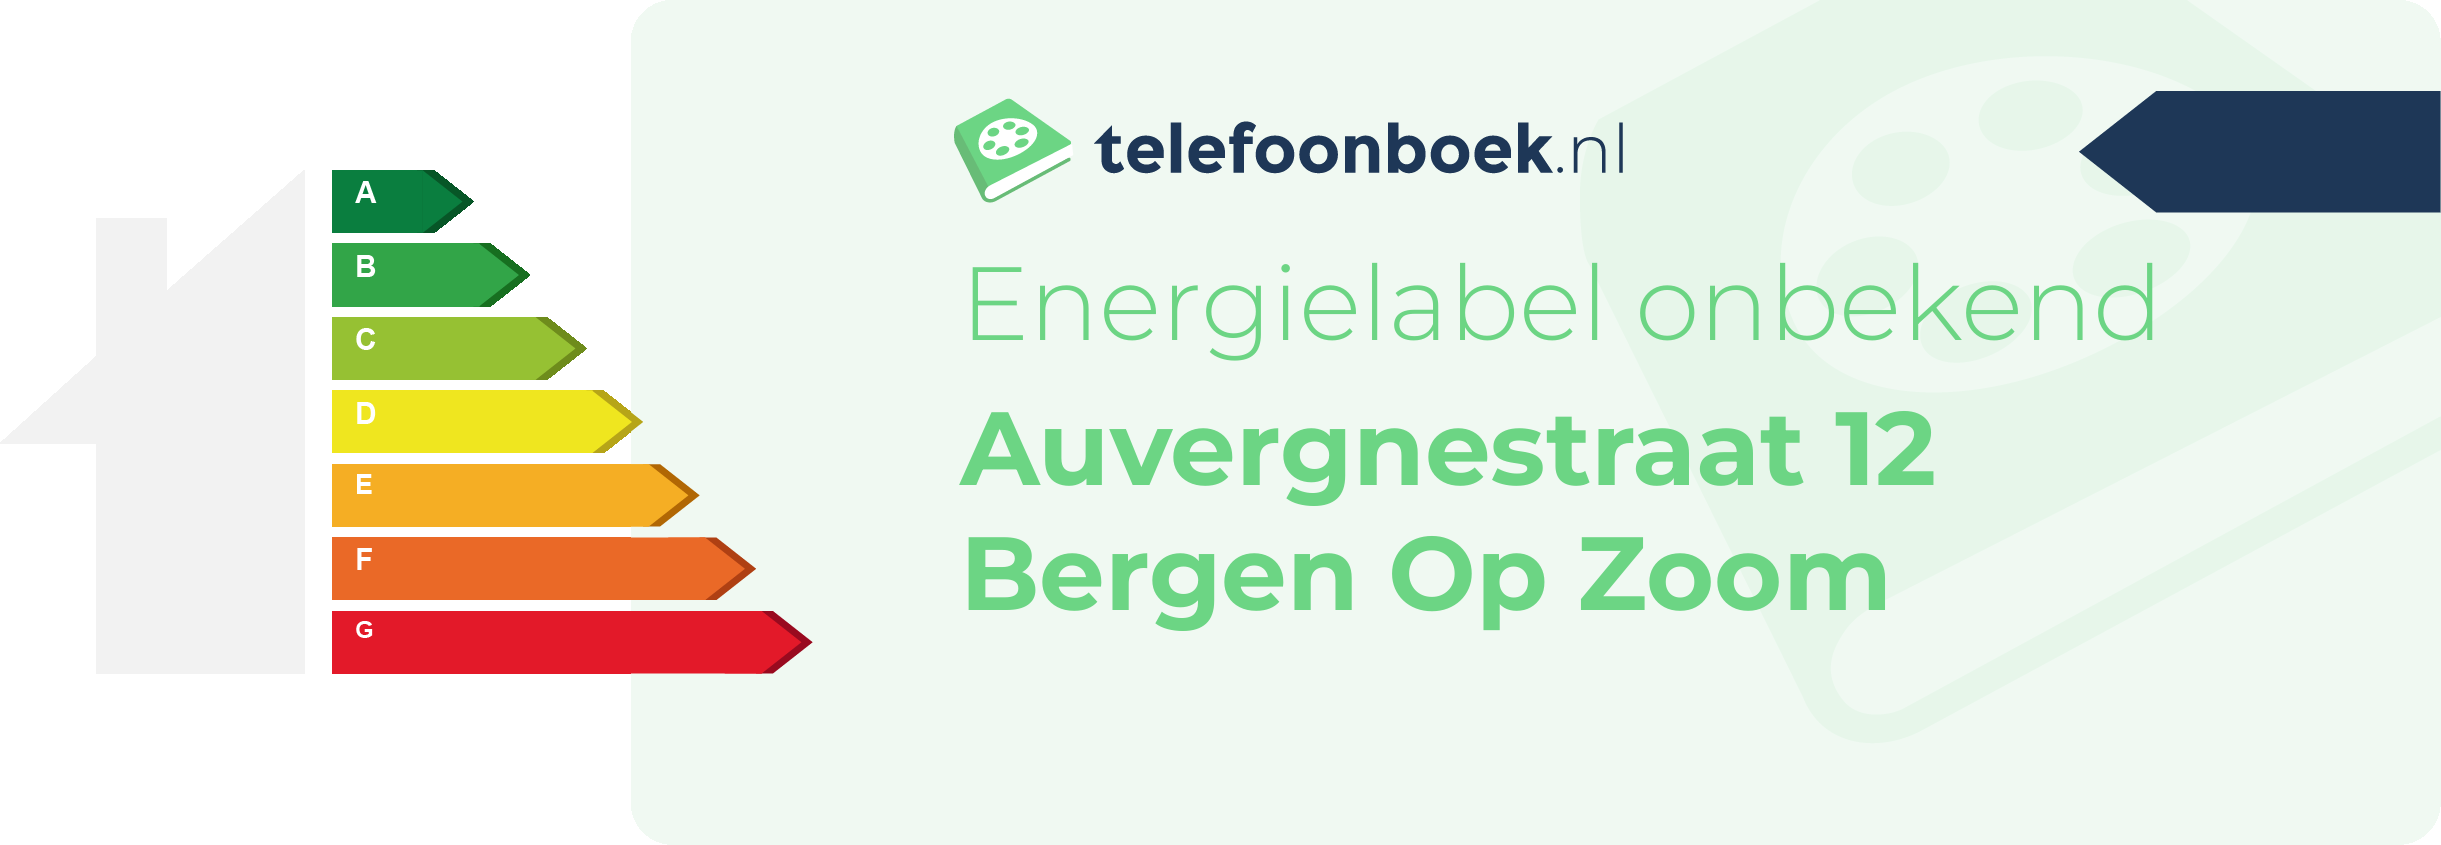 Energielabel Auvergnestraat 12 Bergen Op Zoom